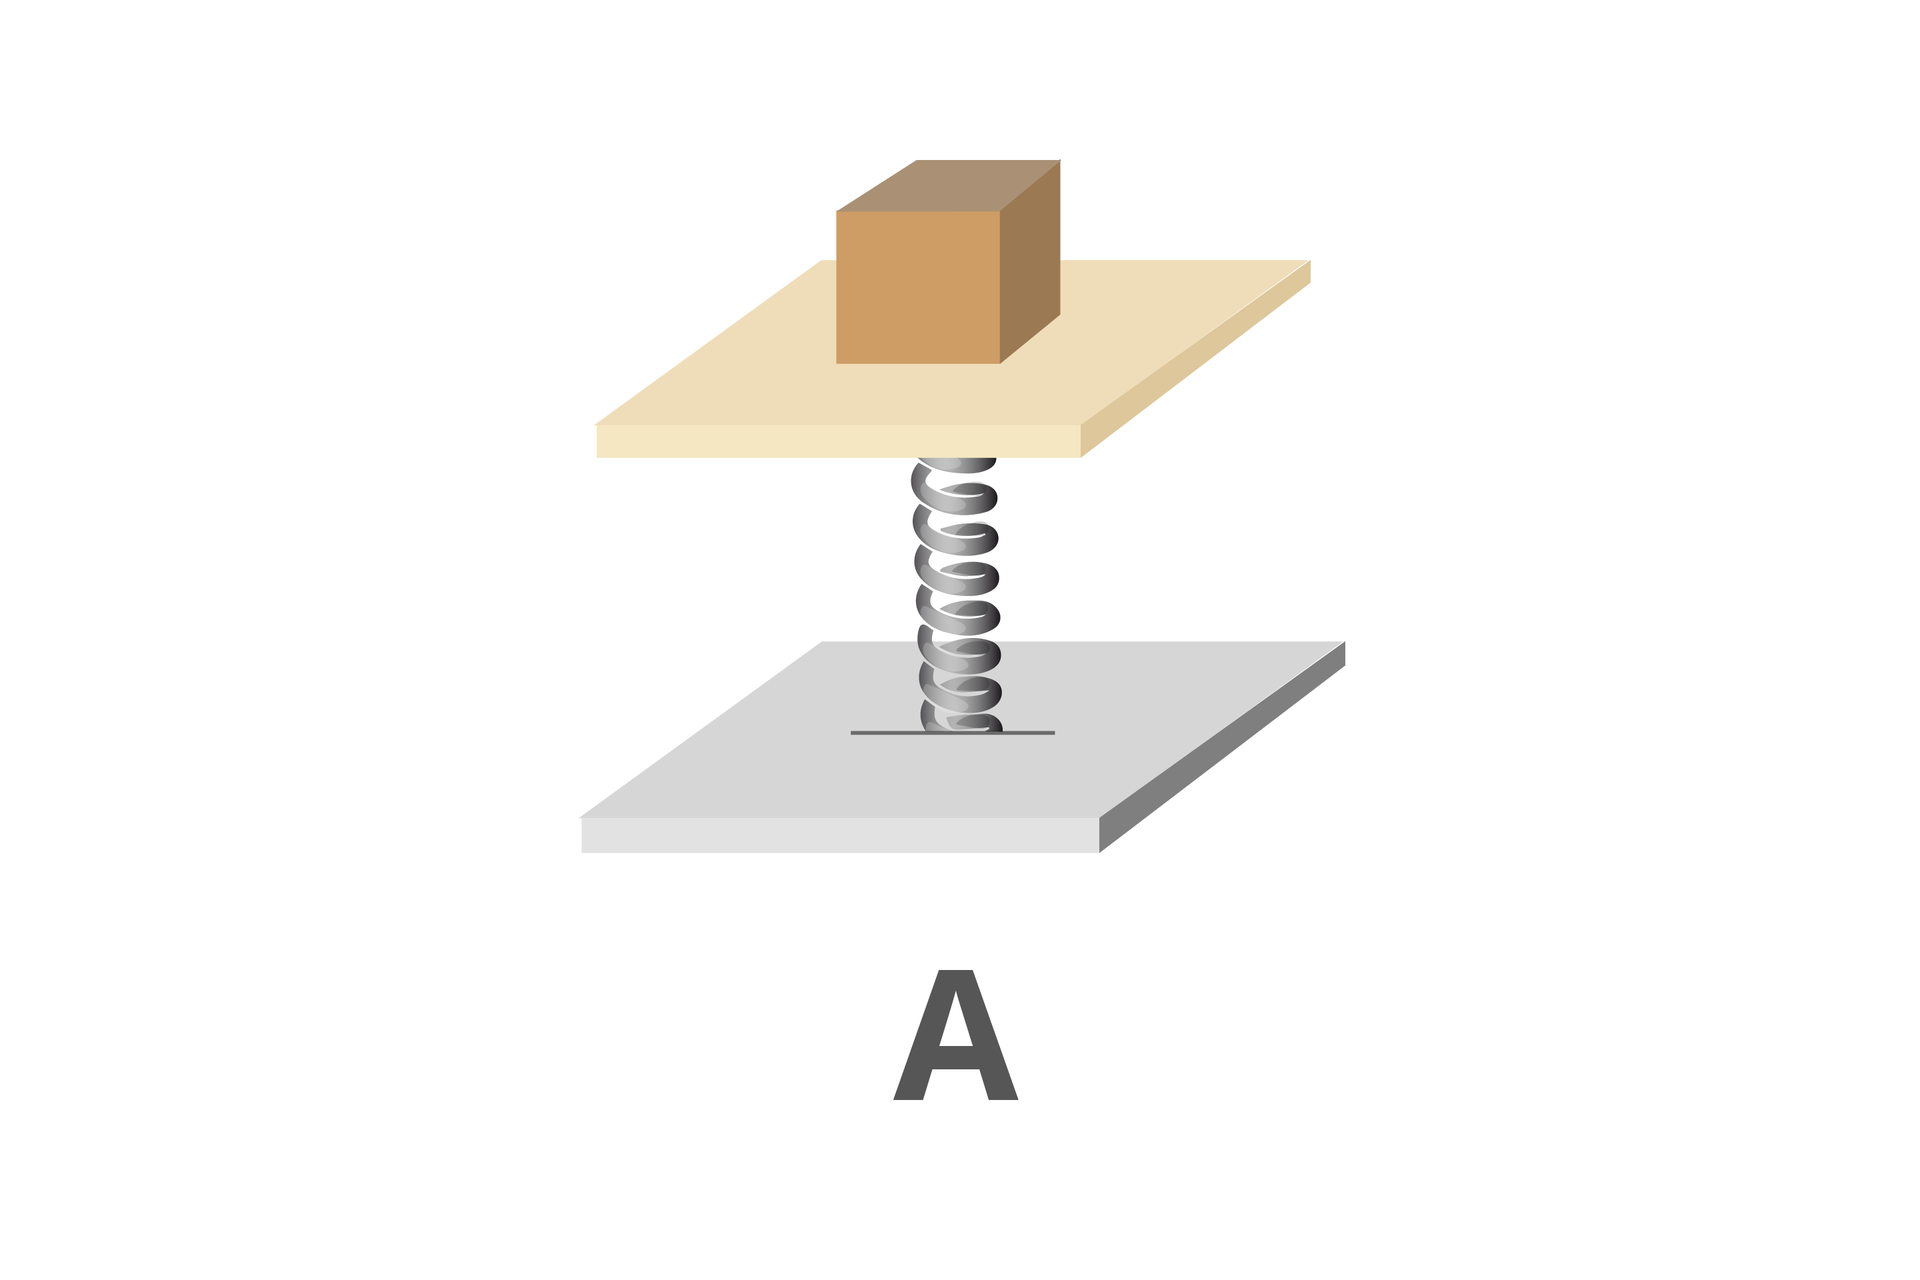 Grafika obrazująca paczkę umieszczoną na szalce sprężynowej. Tło białe. Dwie kwadratowe płyty, jedna nad drugą, połączone sprężyną. Na górnej płytce znajduje się brązowy sześcian. Na dole wielka litera „A”.